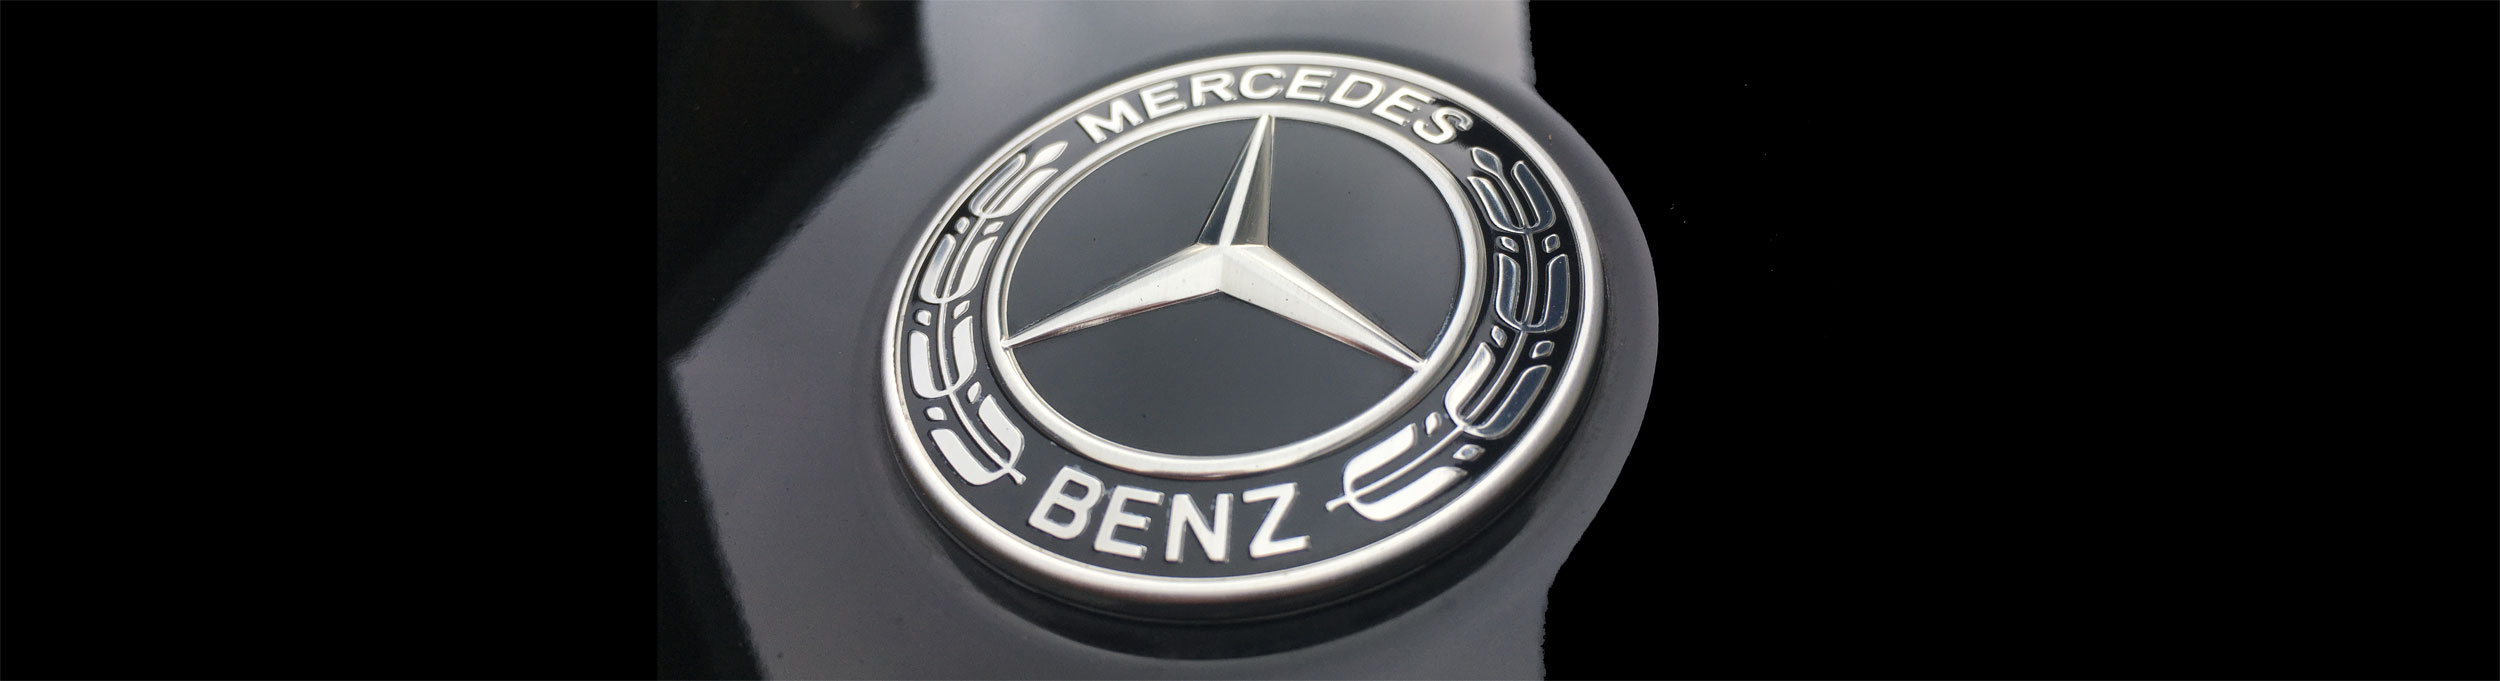 Musterfeststellung Mercedes